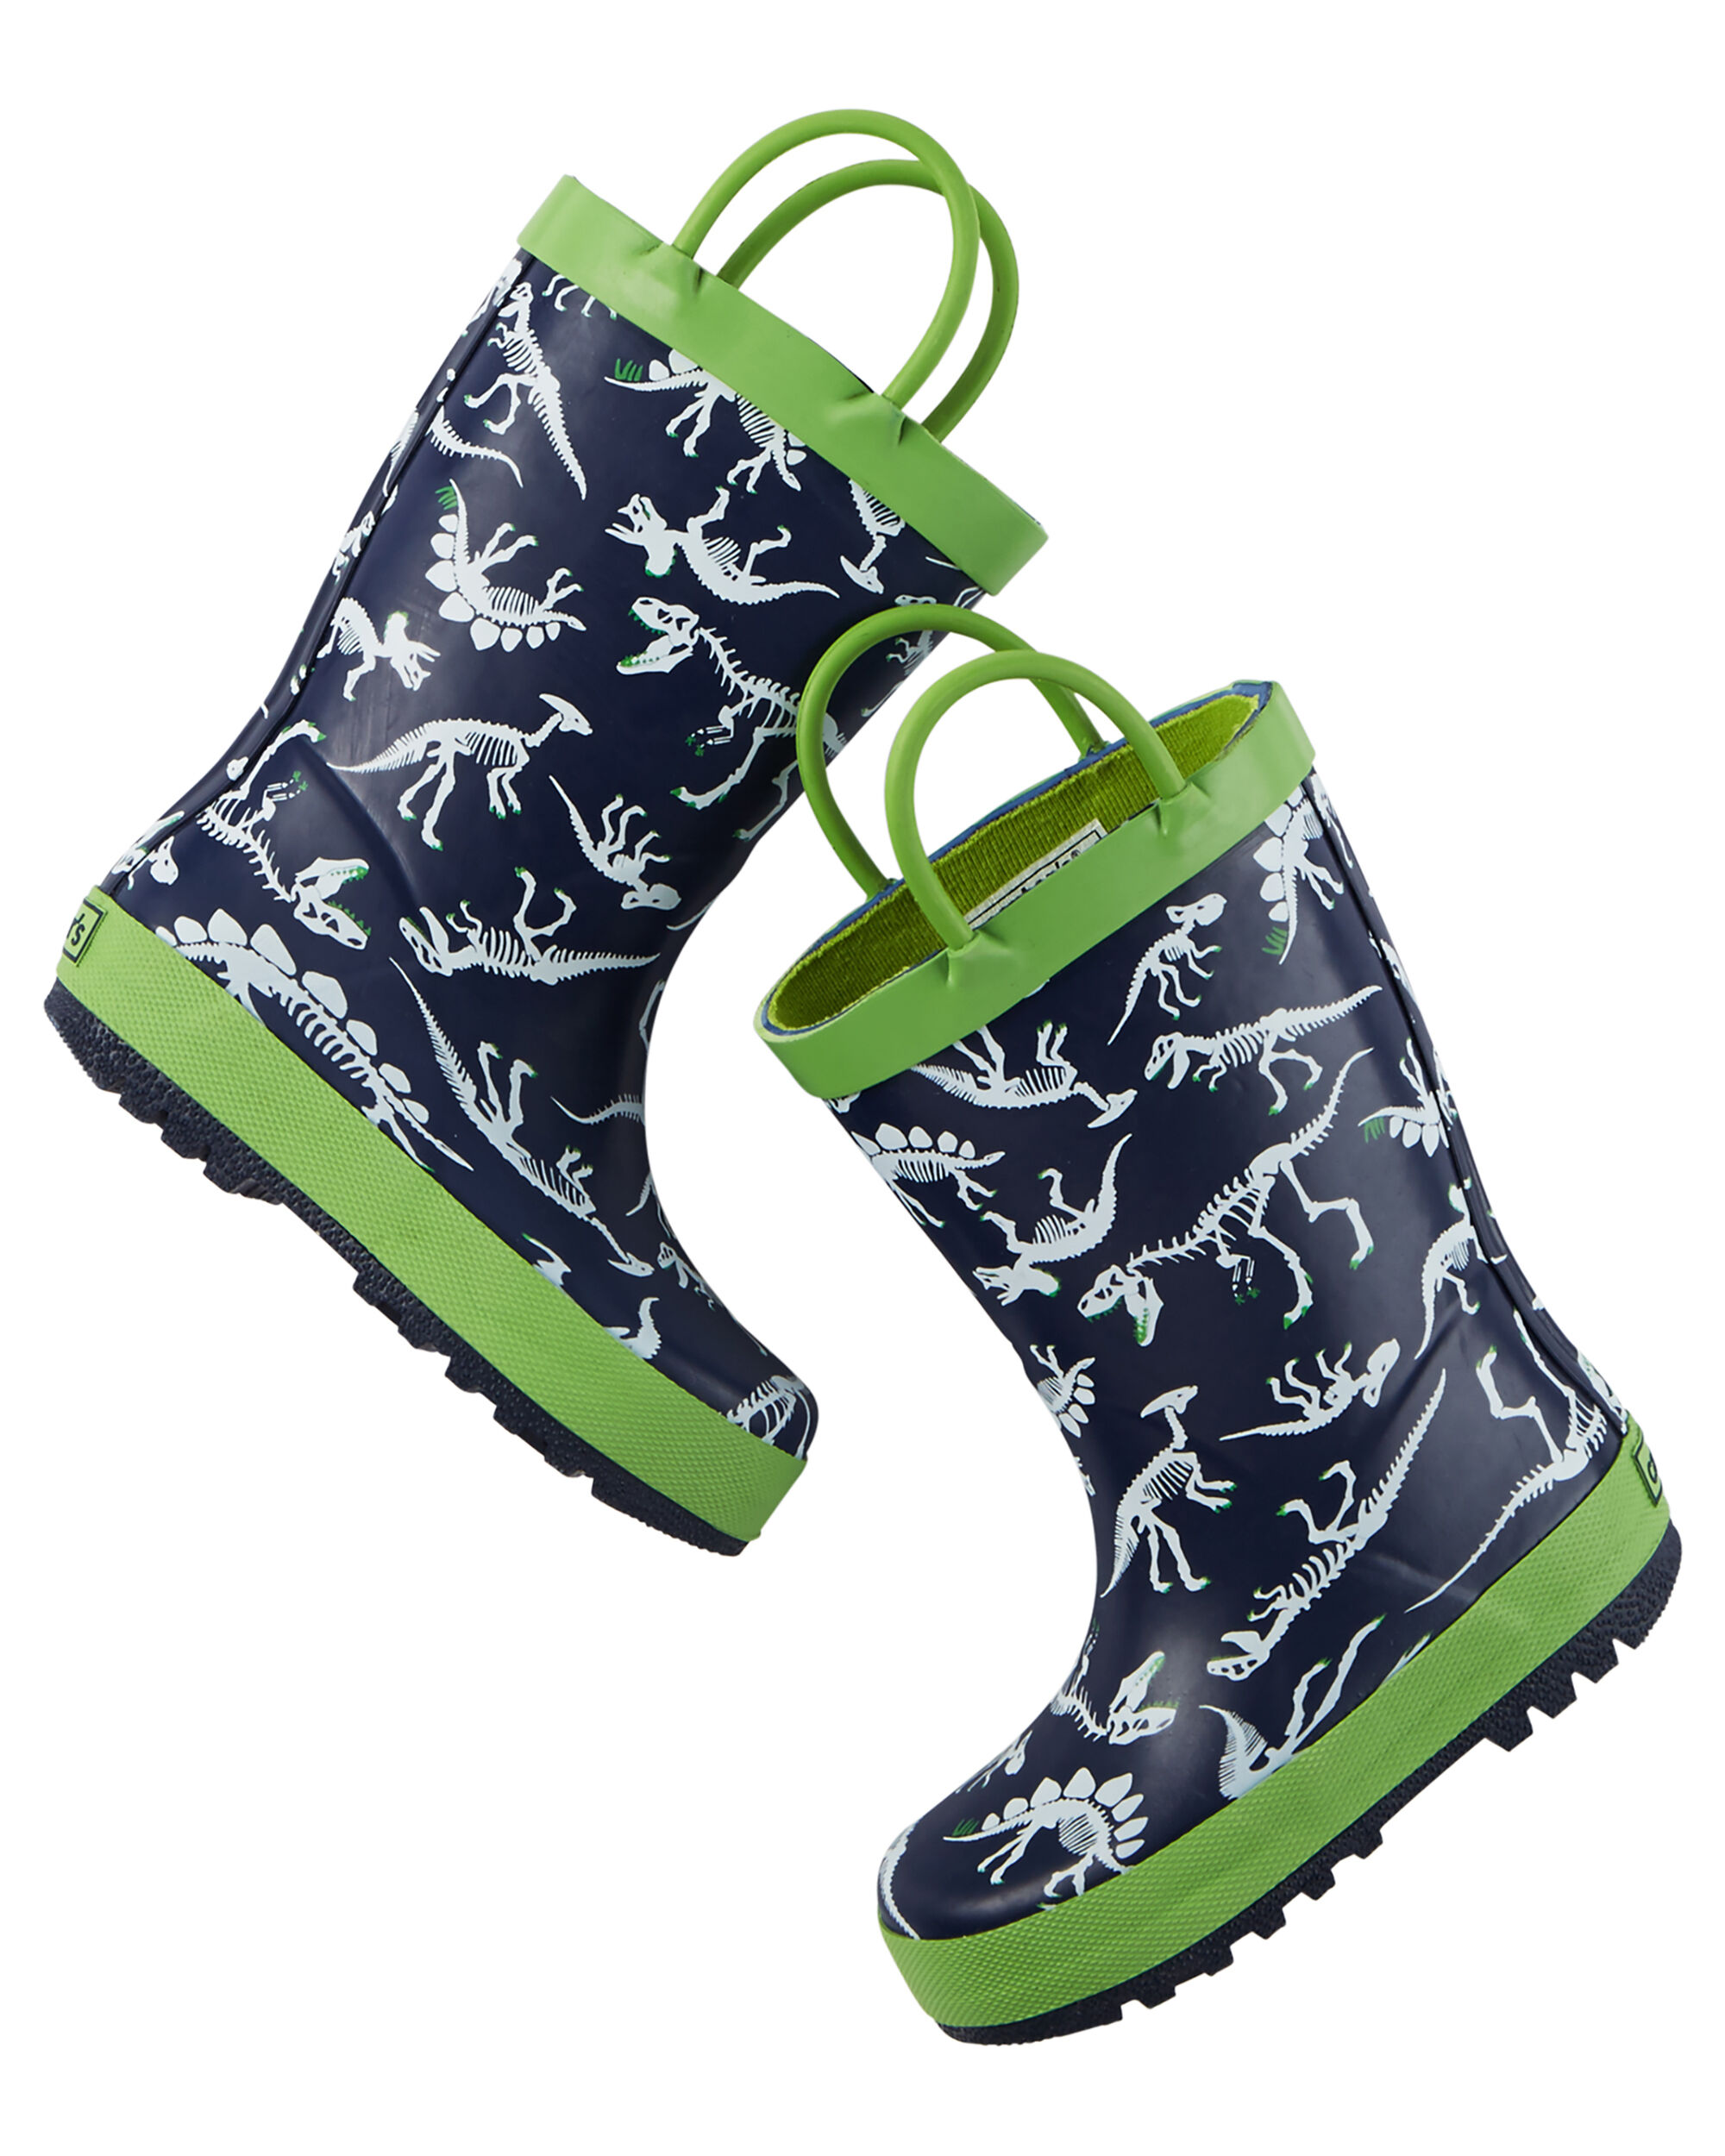 cheap rain boots canada